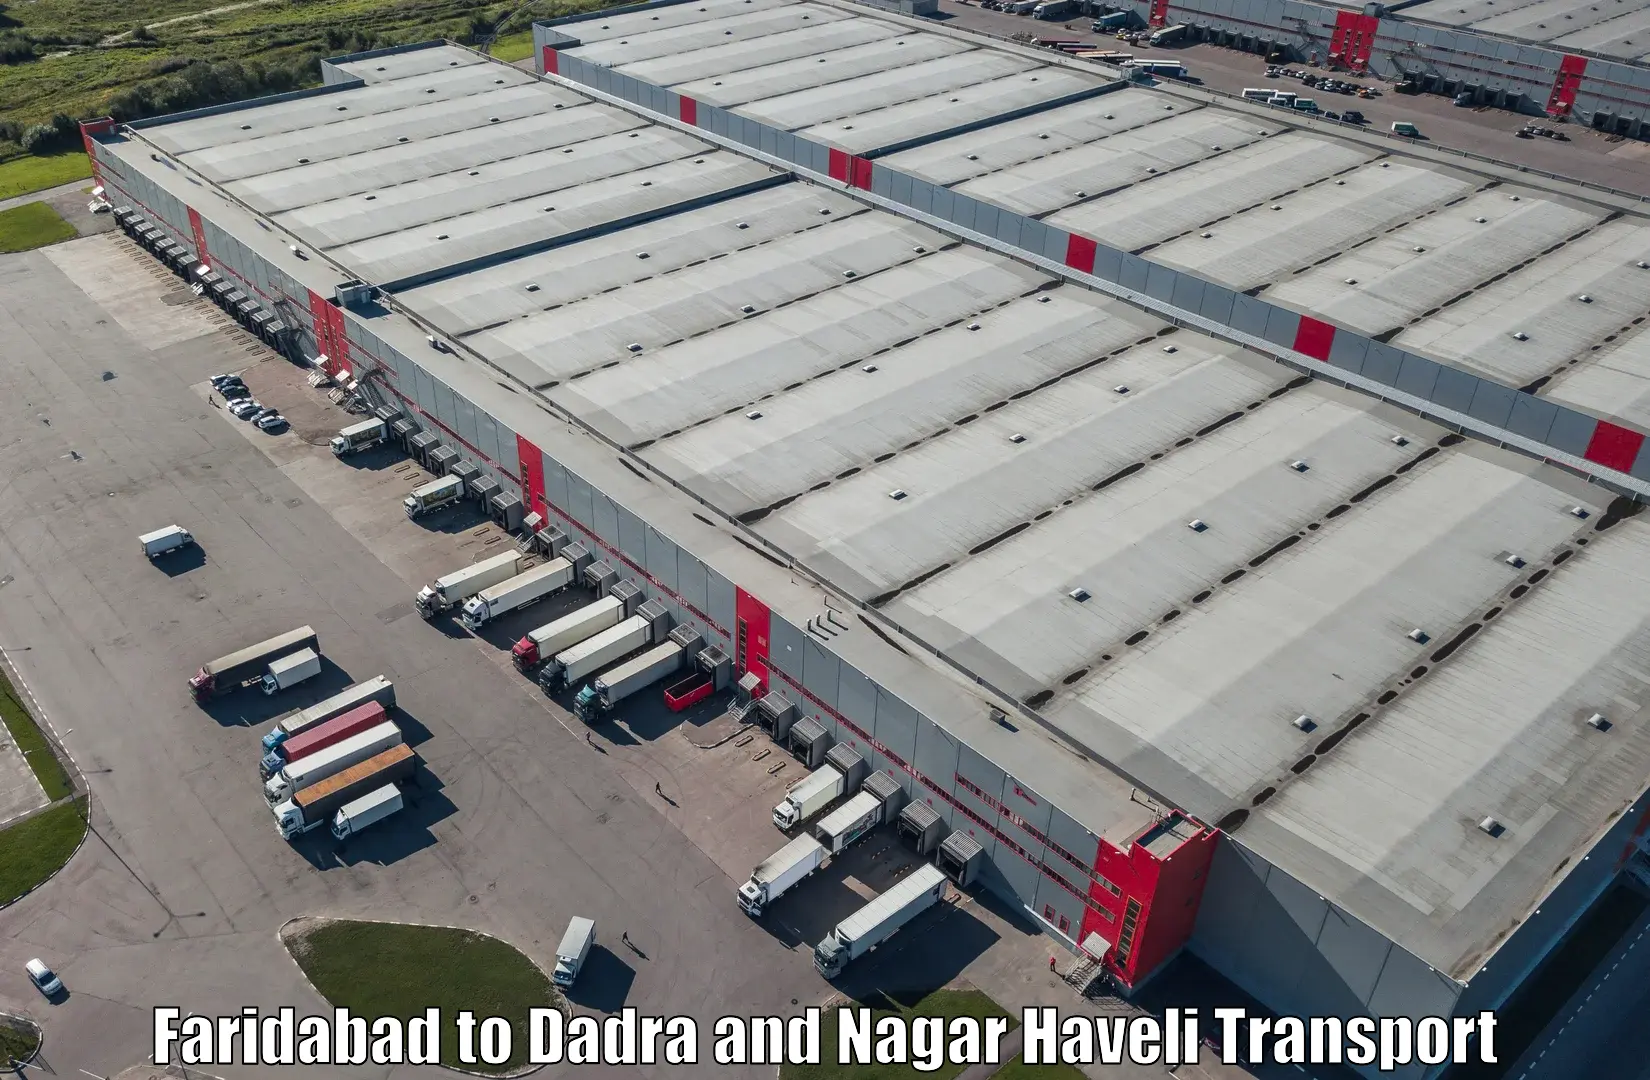 Shipping partner Faridabad to Dadra and Nagar Haveli